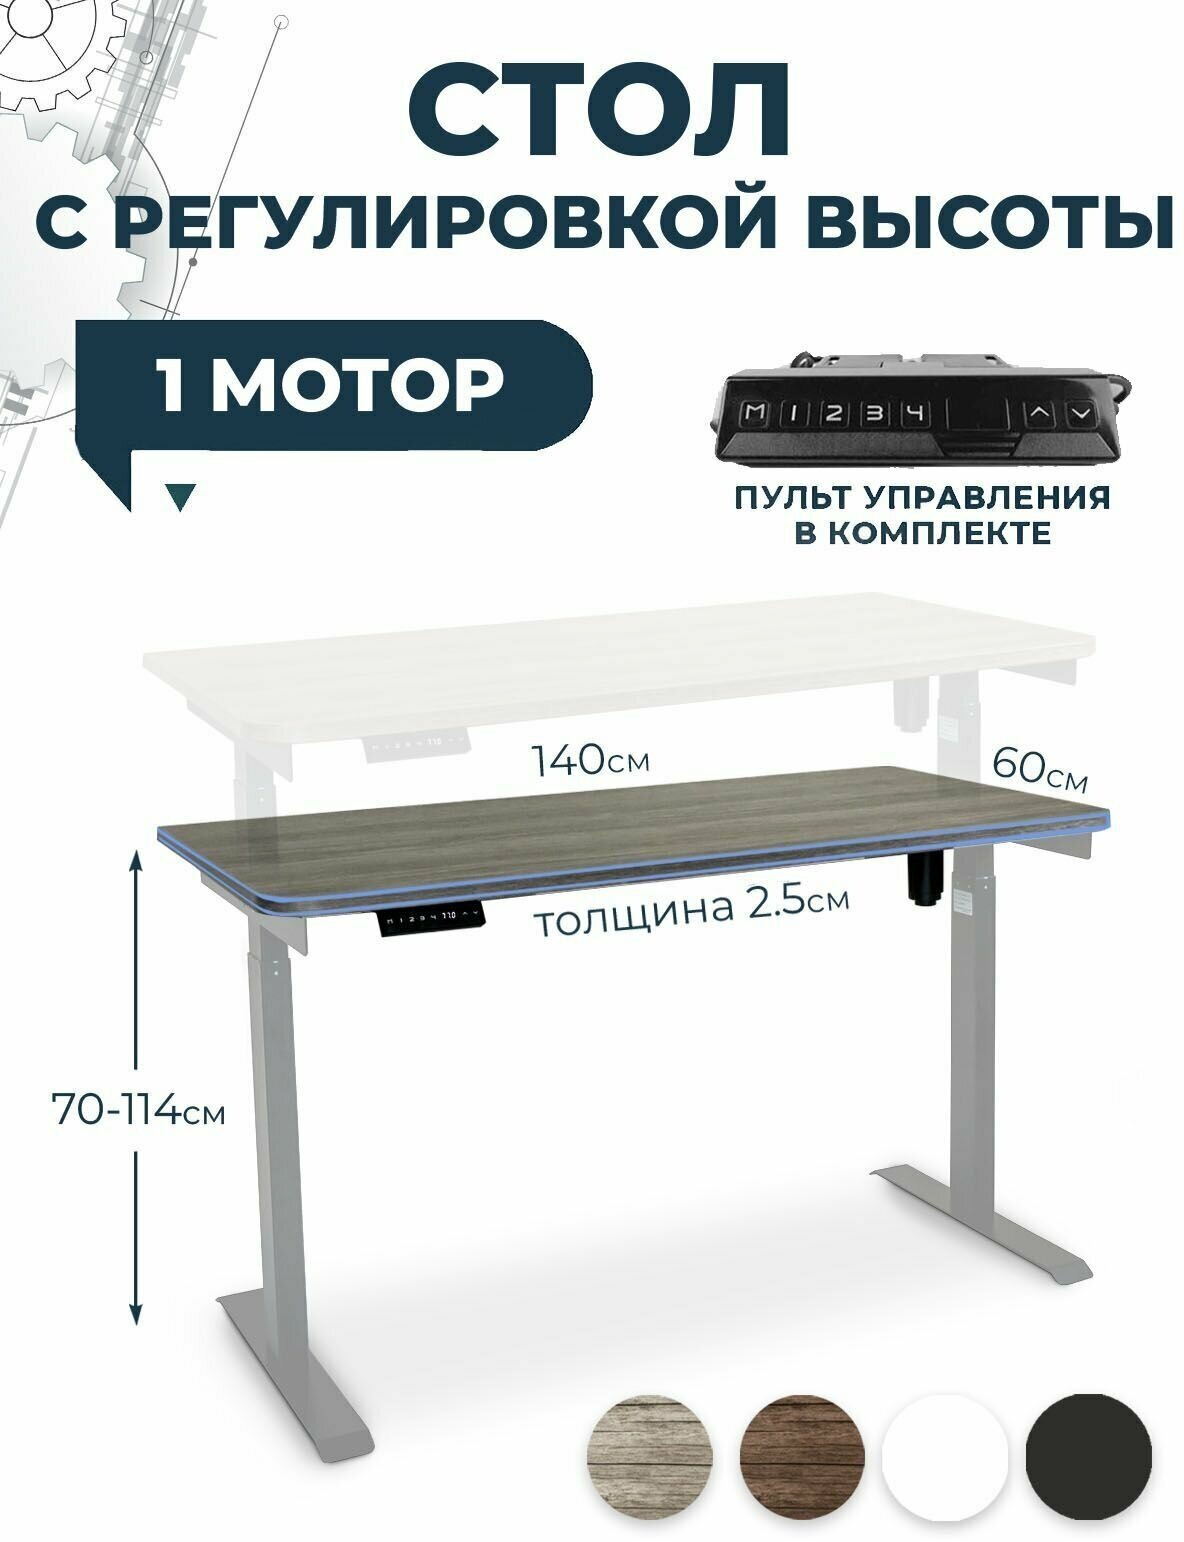 Офисный стол лофт для работы стоя и сидя PROtect, серый, столешница ЛДСП 140x60x2,5 см, модель подстолья Е6